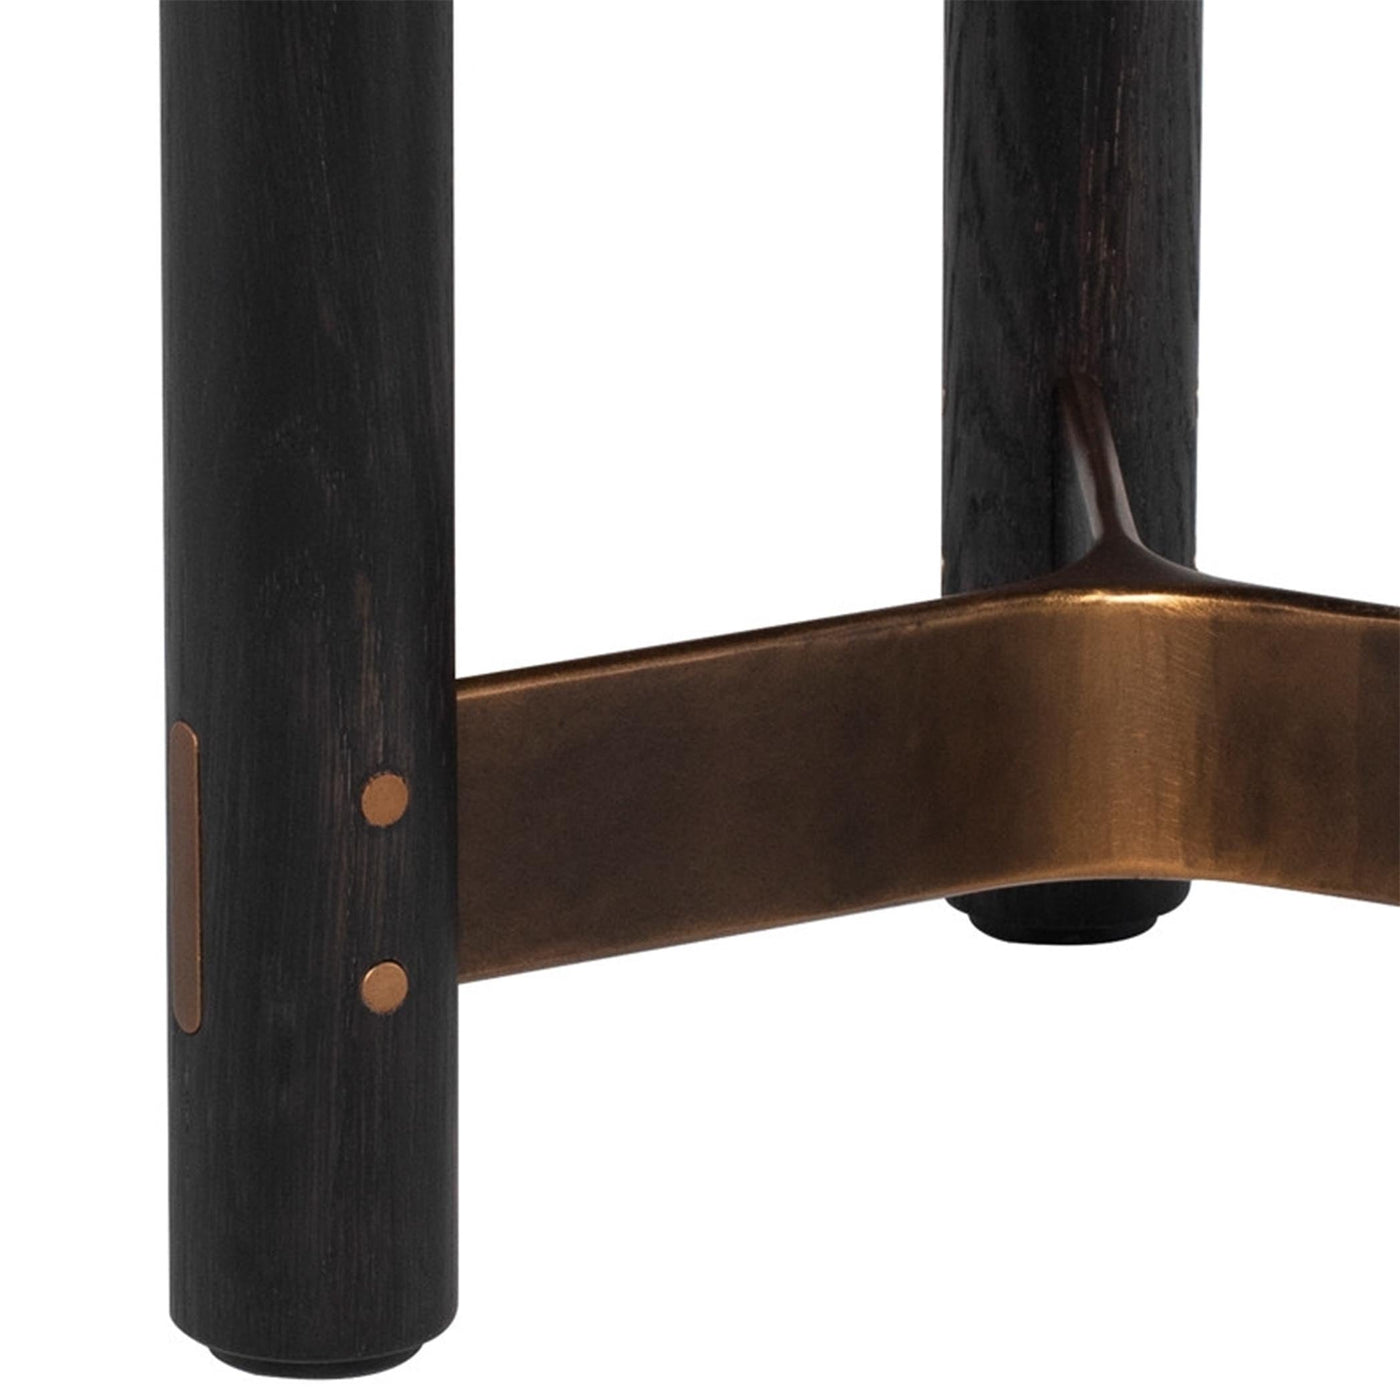 La table d'appoint ronde Stilt de District Eight offre une esthétique captivante et une polyvalence d'utilisation. Fabriquée avec soin en bois ébonisé ou fumé, elle apporte une touche sophistiquée à tout espace